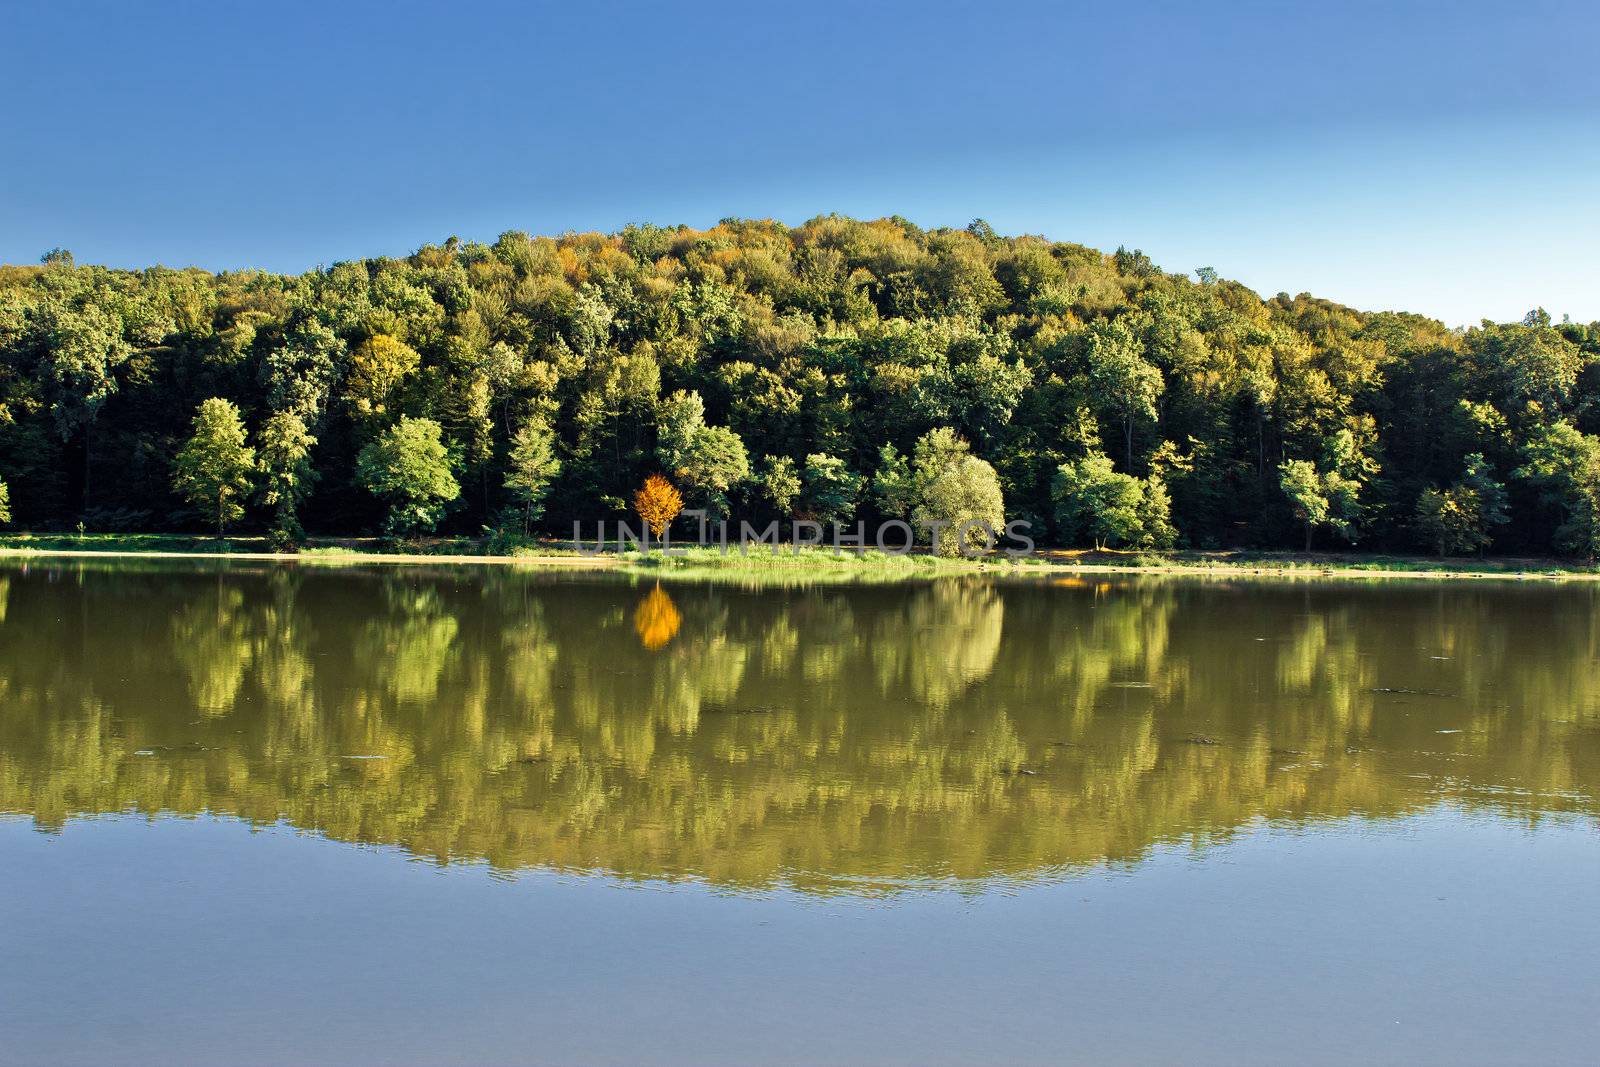 Idyllic autumn reflections on lake surface by xbrchx